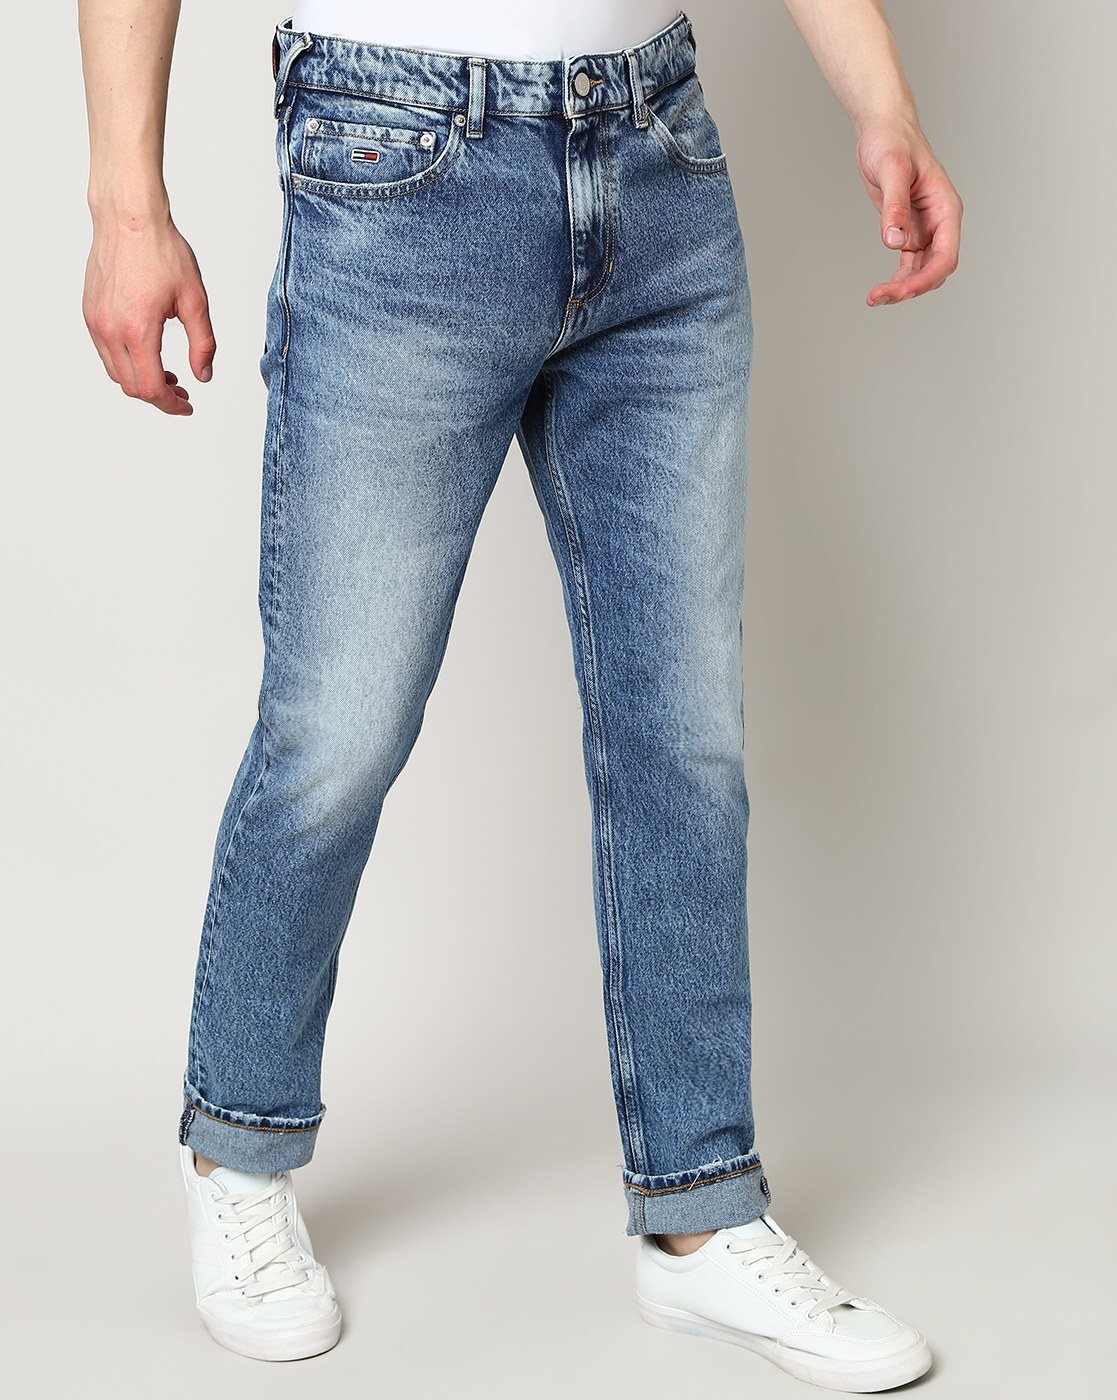 Buy 02 TOMMY Medium Jeans Denim Men for by Online HILFIGER